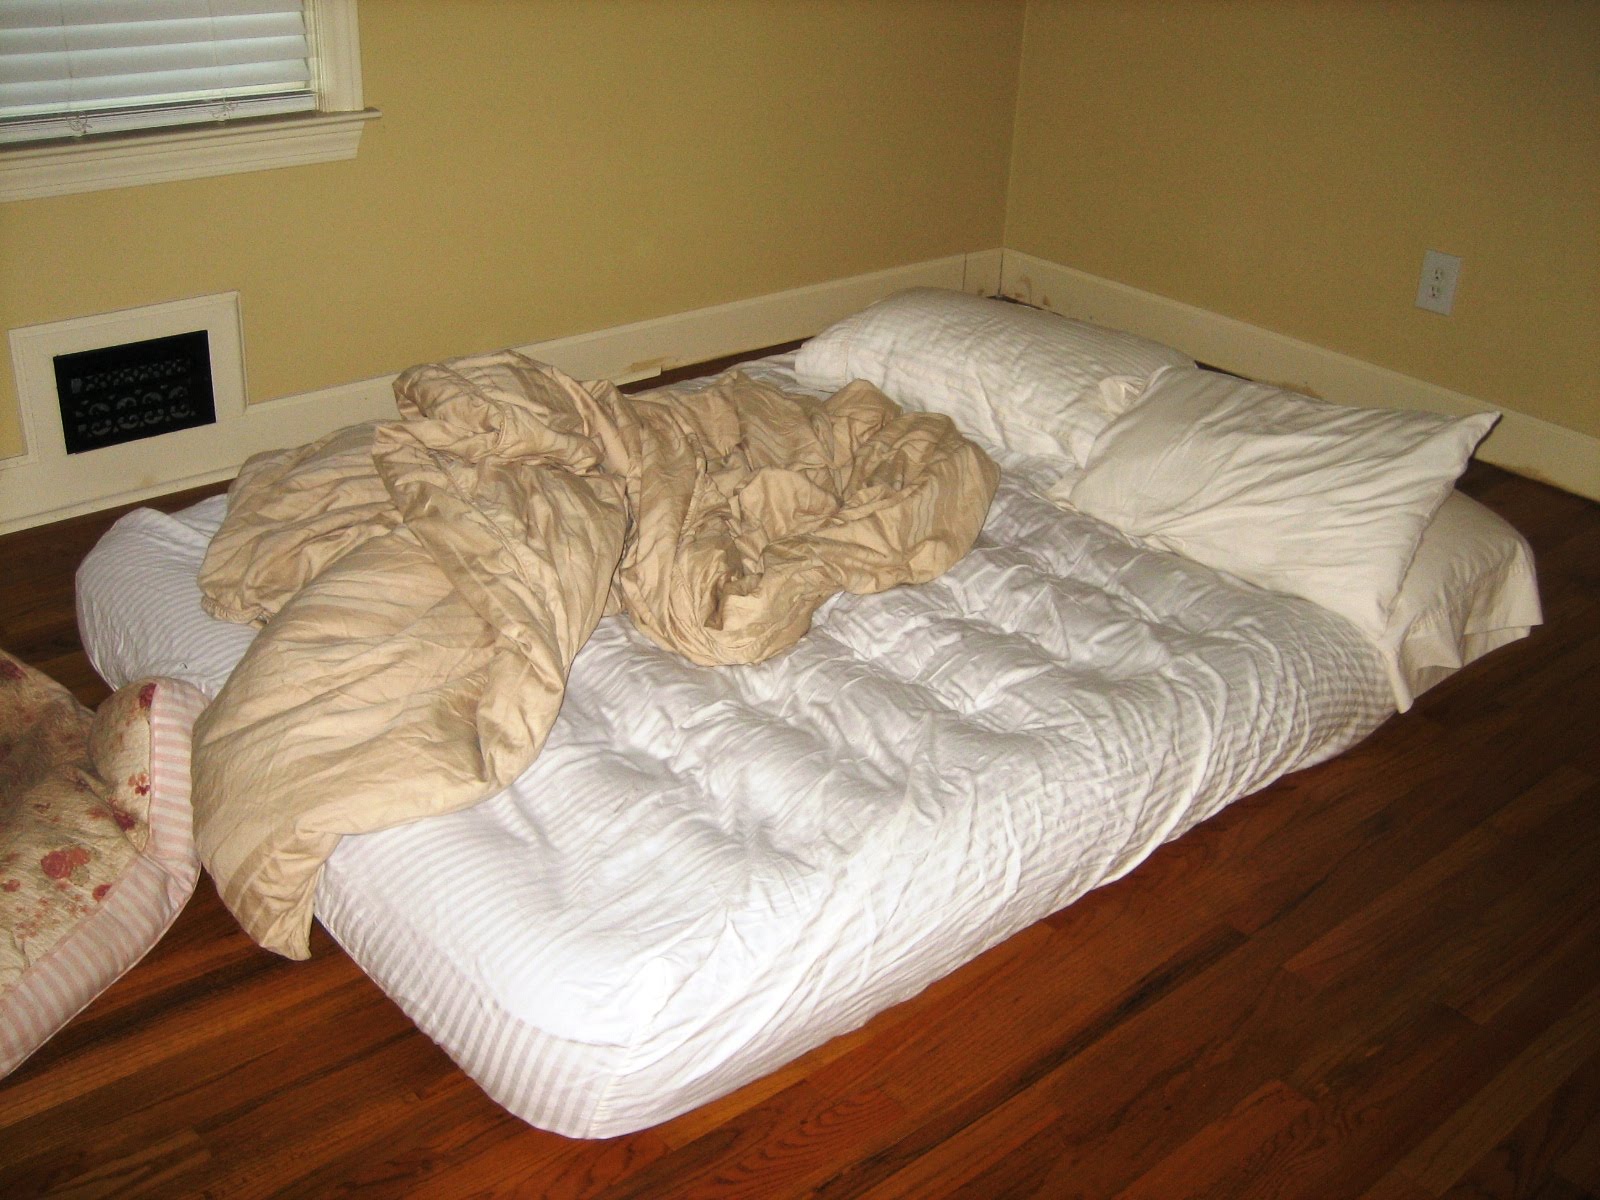 Надо спать кровати. Комната с матрасом. Кровать с матрасом. Кровать на полу. Кровать сон.